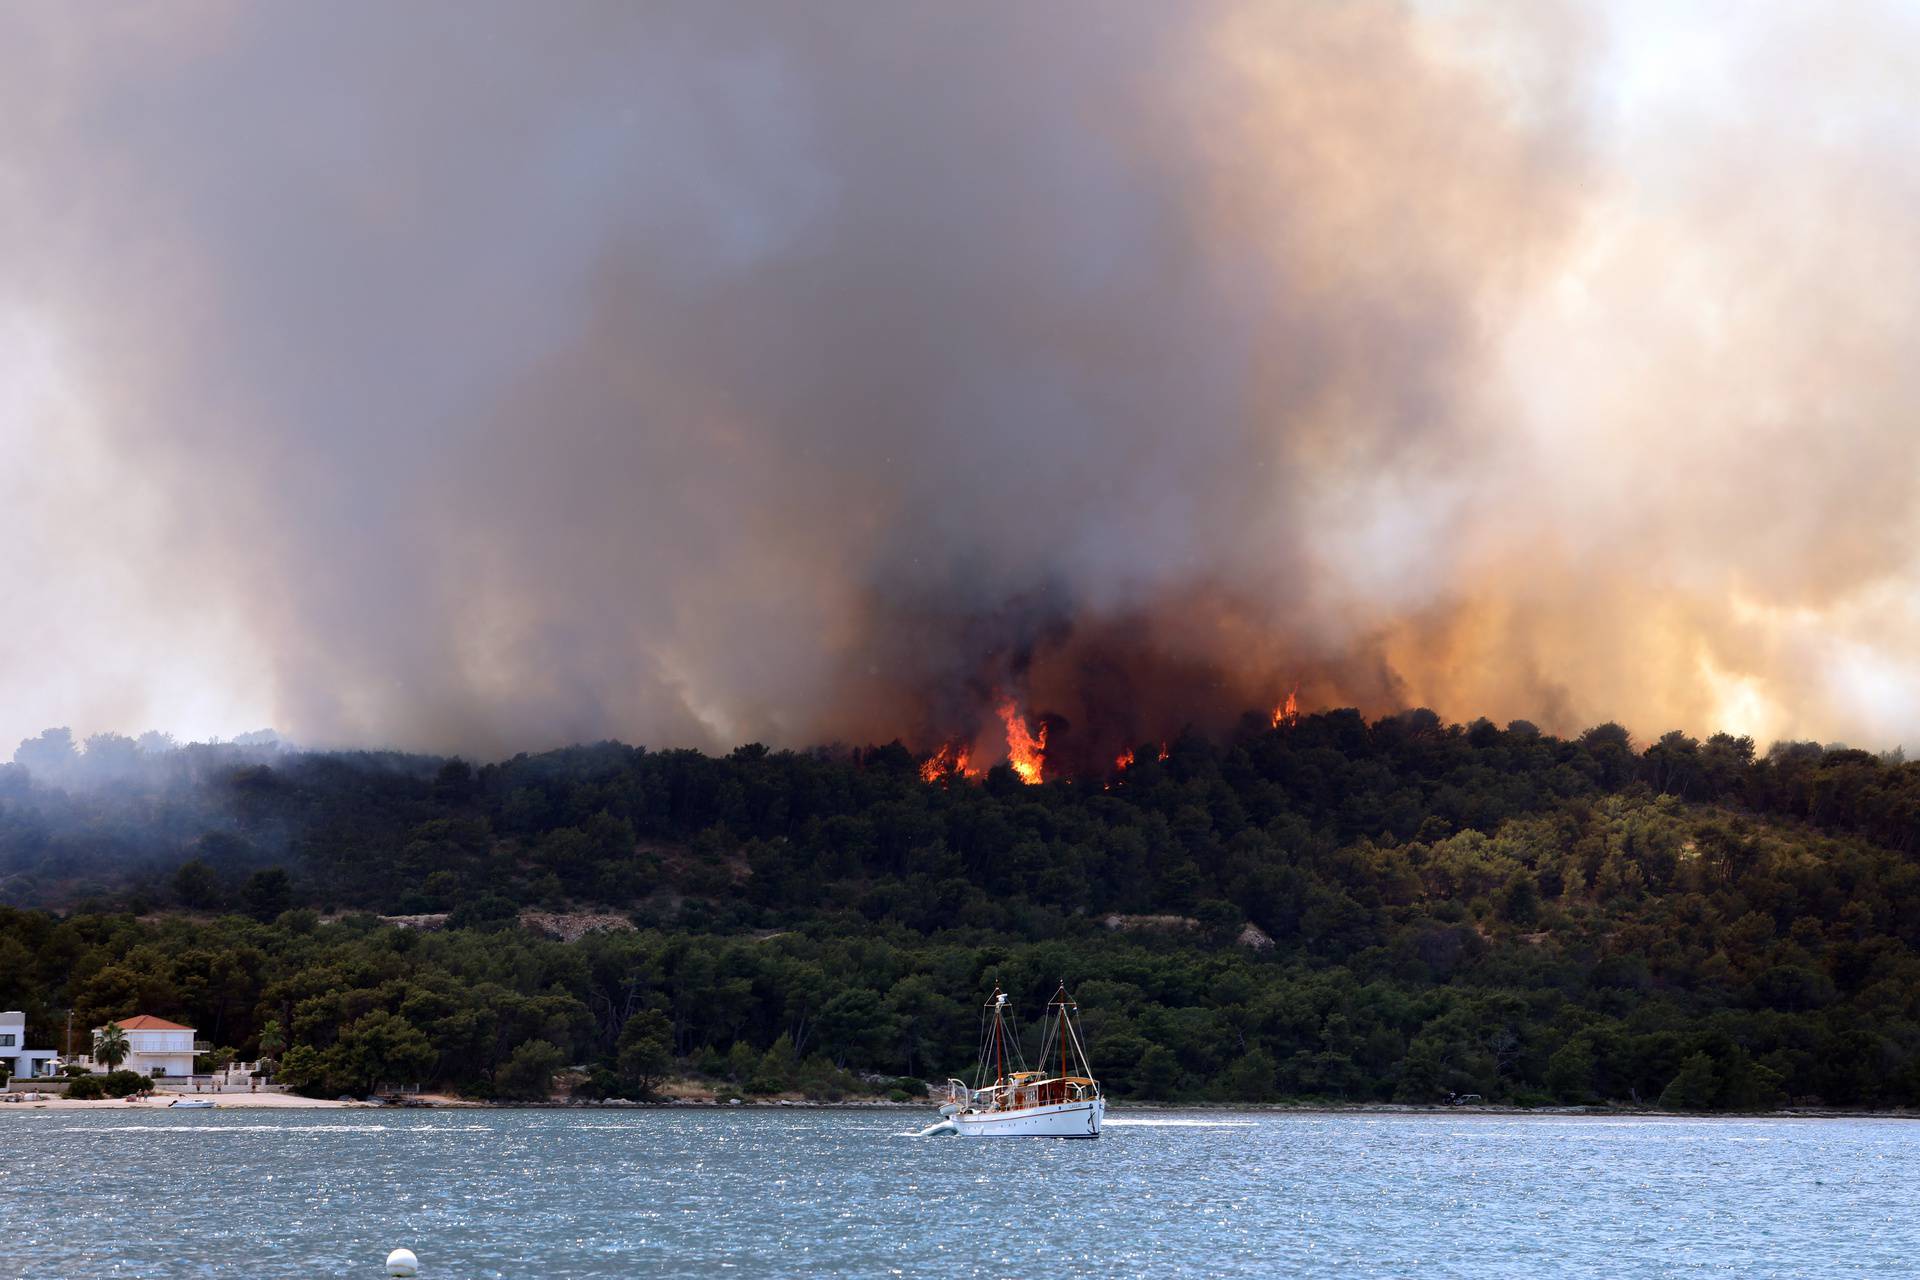 Stravične scene s Čiova: Izgorilo je oko 60 hektara borove šume i raslinja, vjetar stvara problem